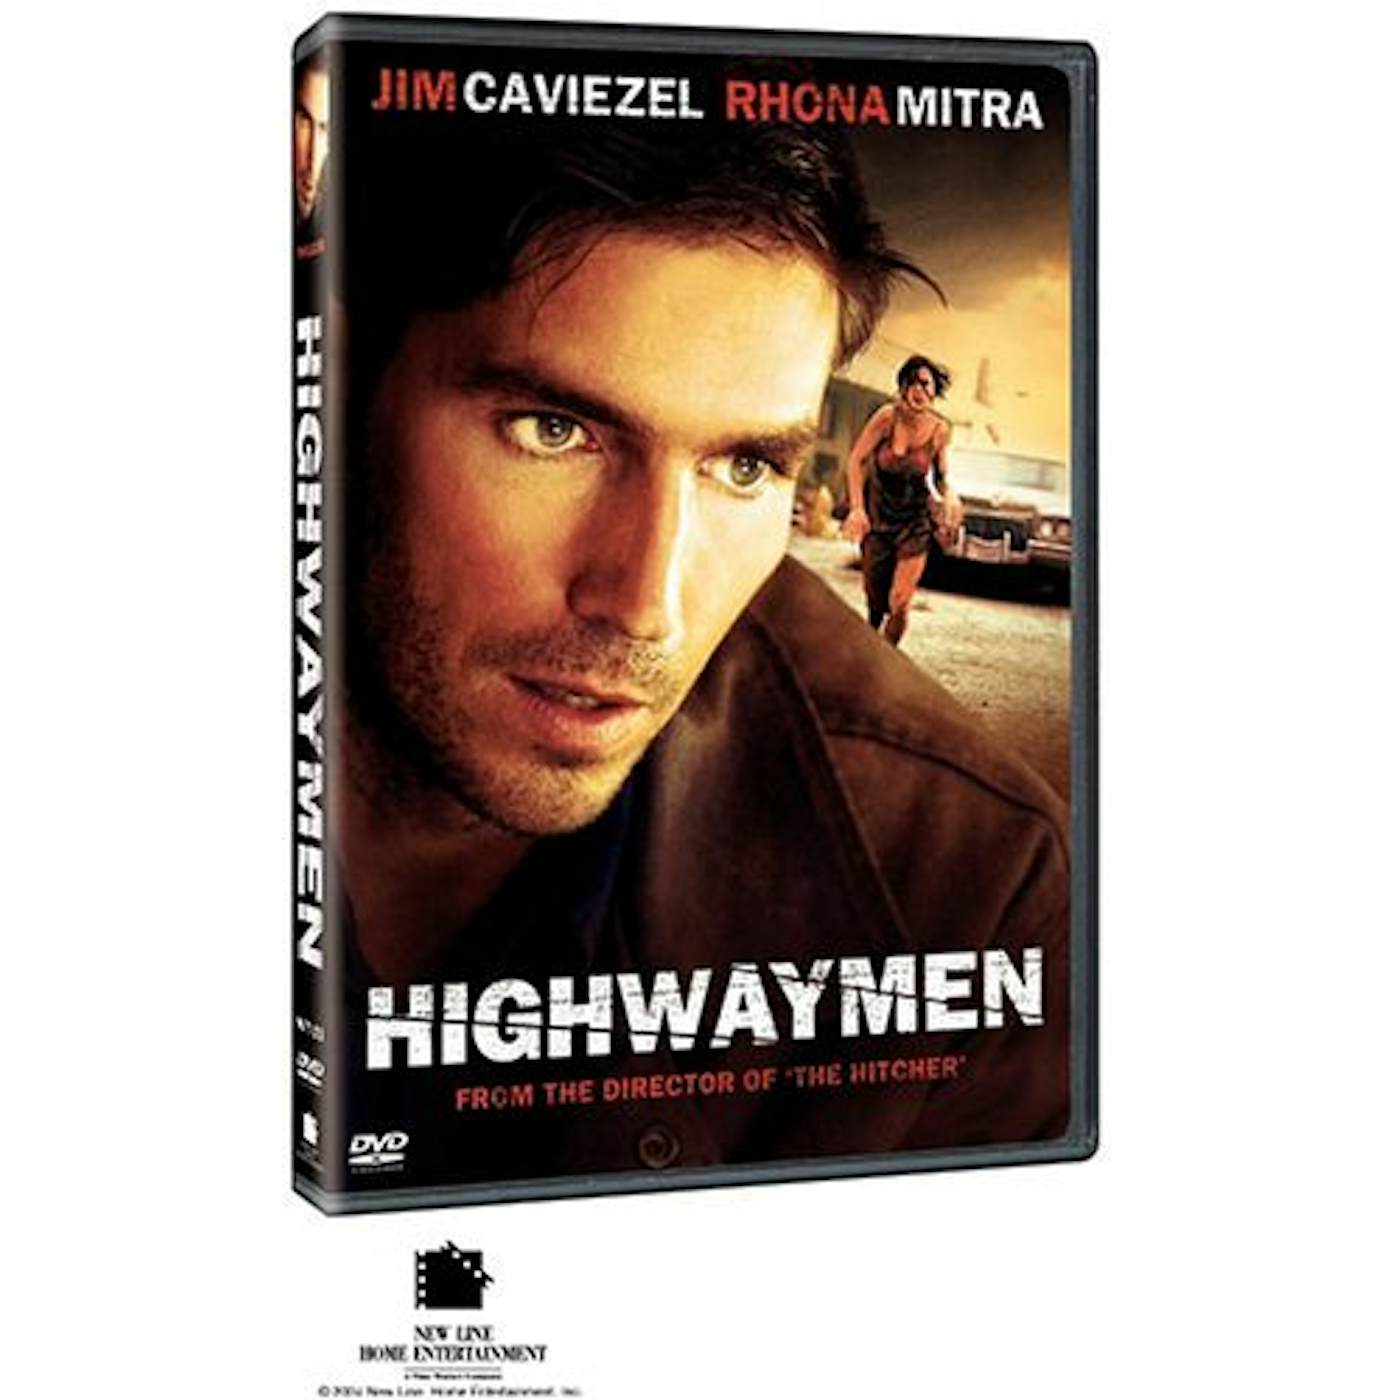 The Highwaymen DVD